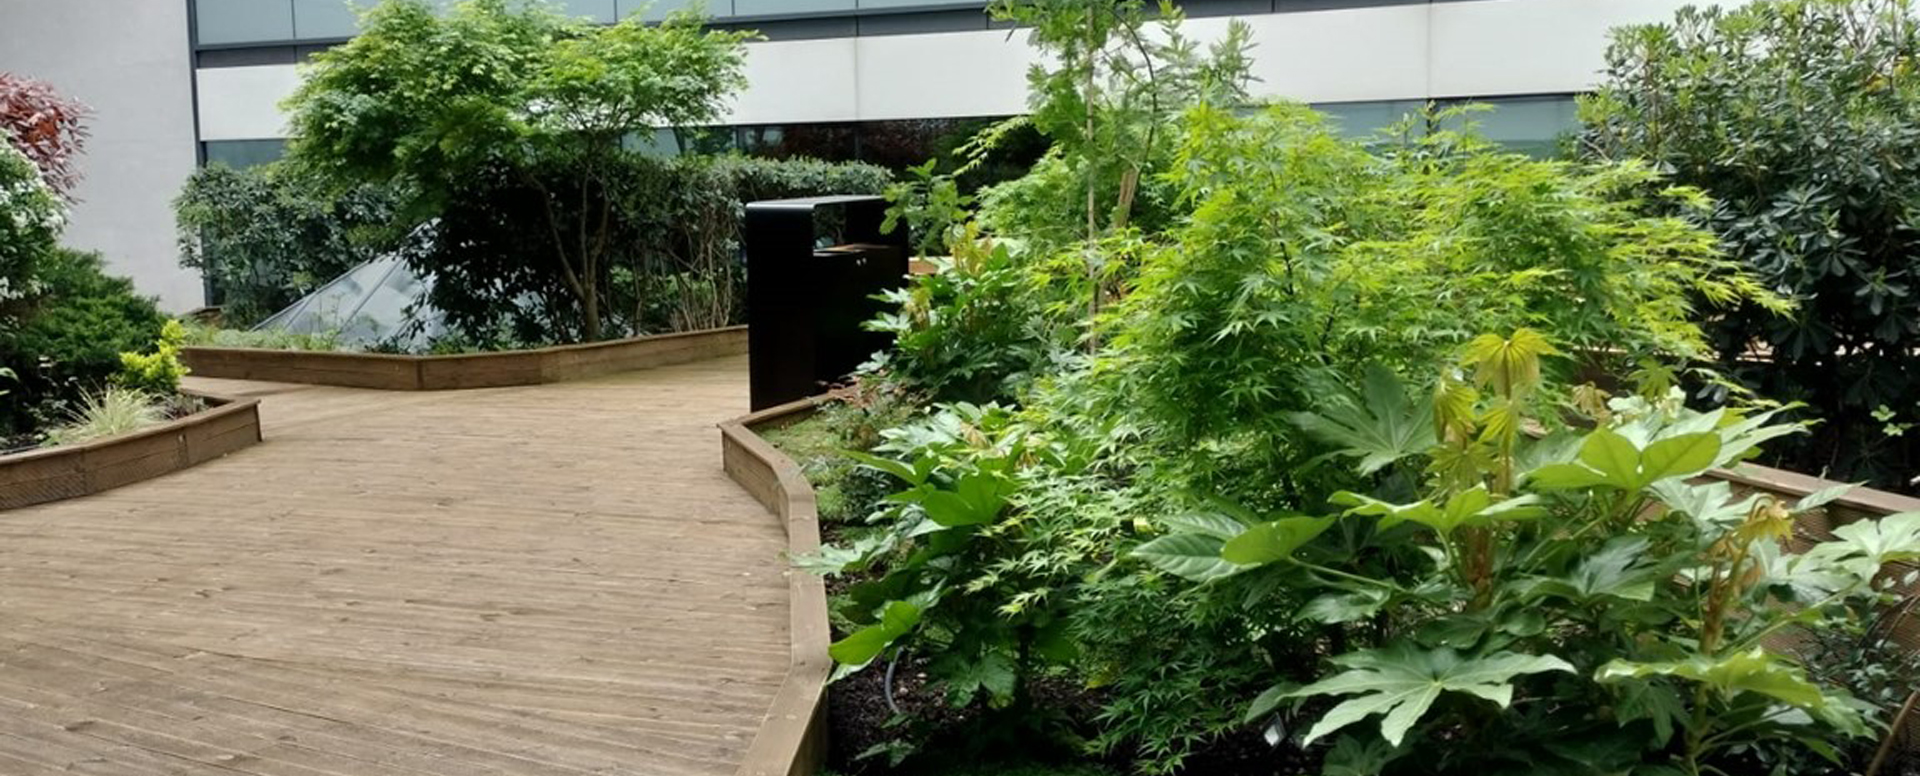 Apis Florae paysagiste Axa banque et assurances verrière - Conception -d'espaces verts pour le patio paris